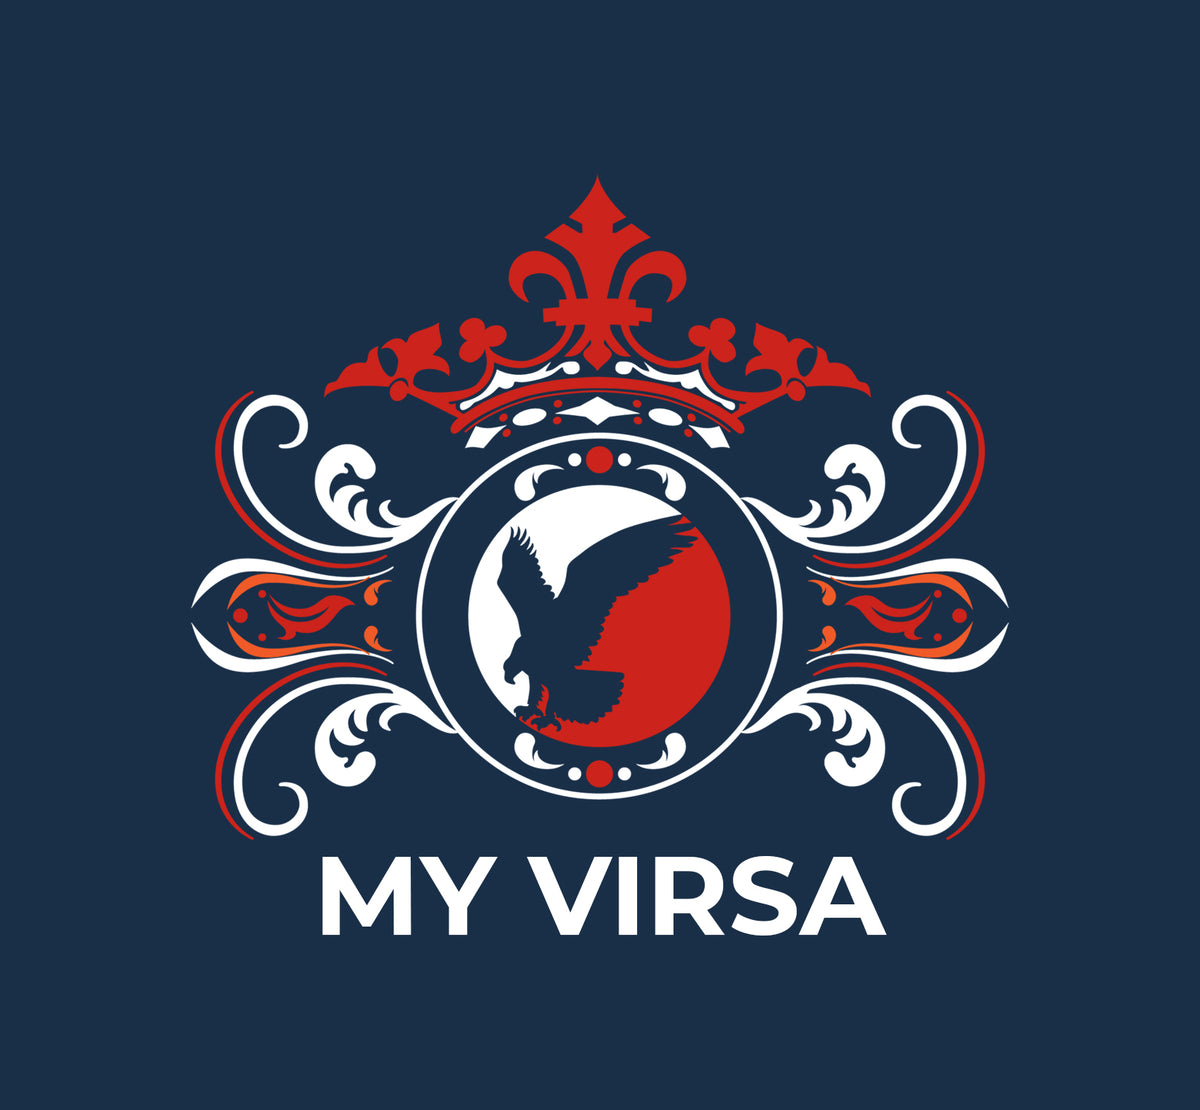 My Virsa